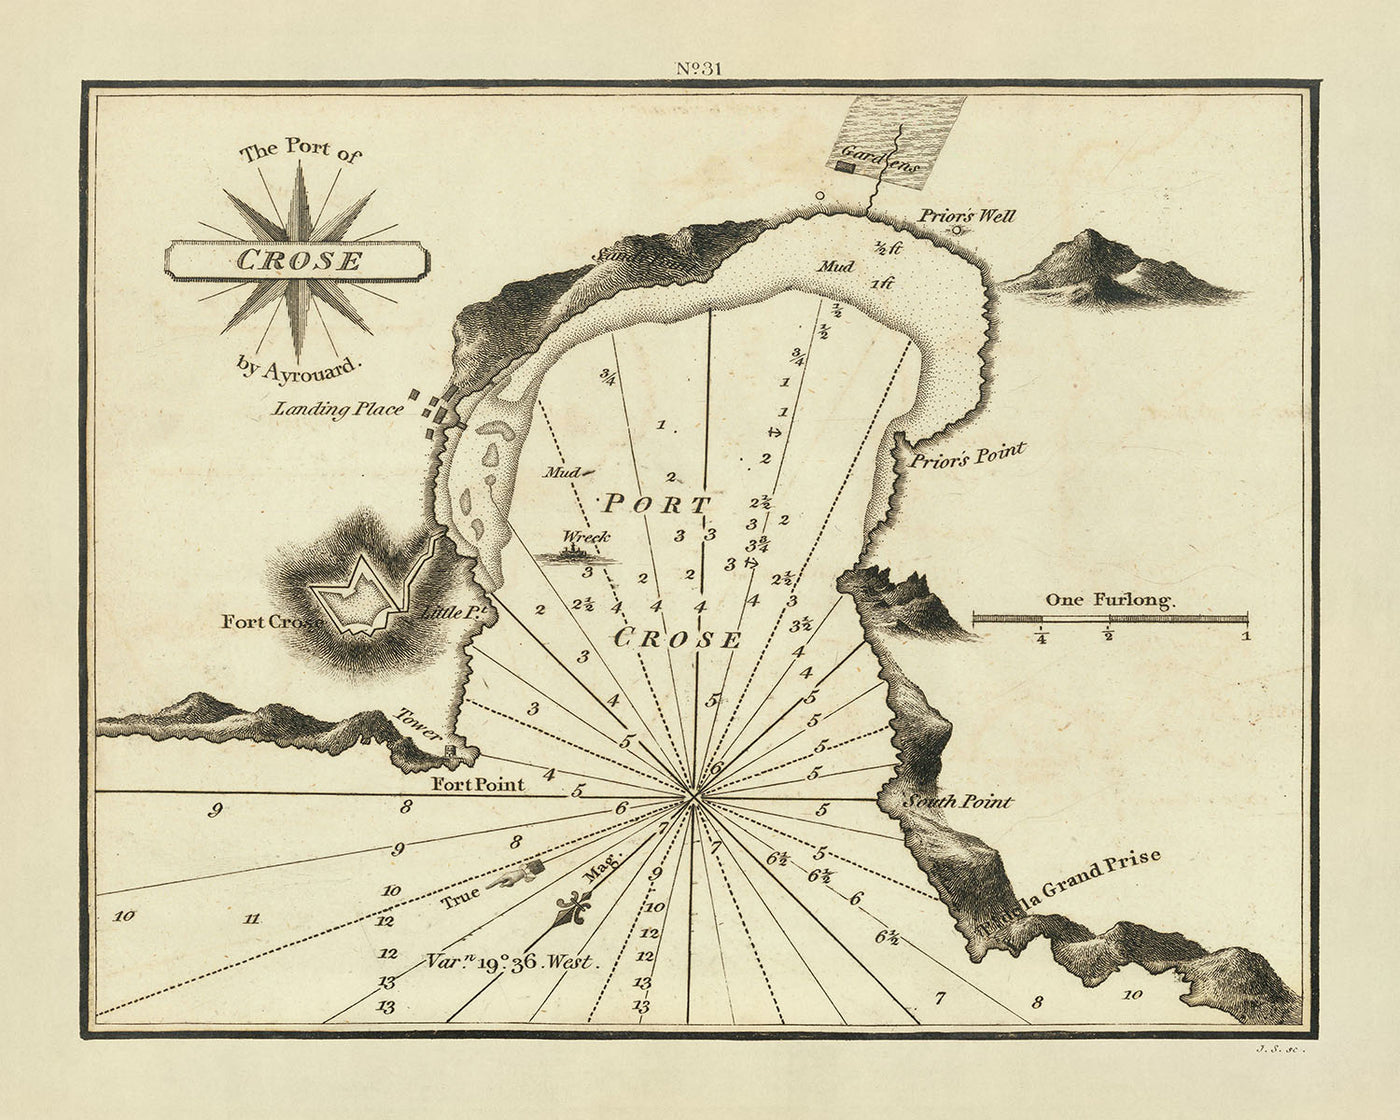 Carte marine du Vieux-Port de Crose par Heather, 1802 : Fort Cros, puits du Prior, épave